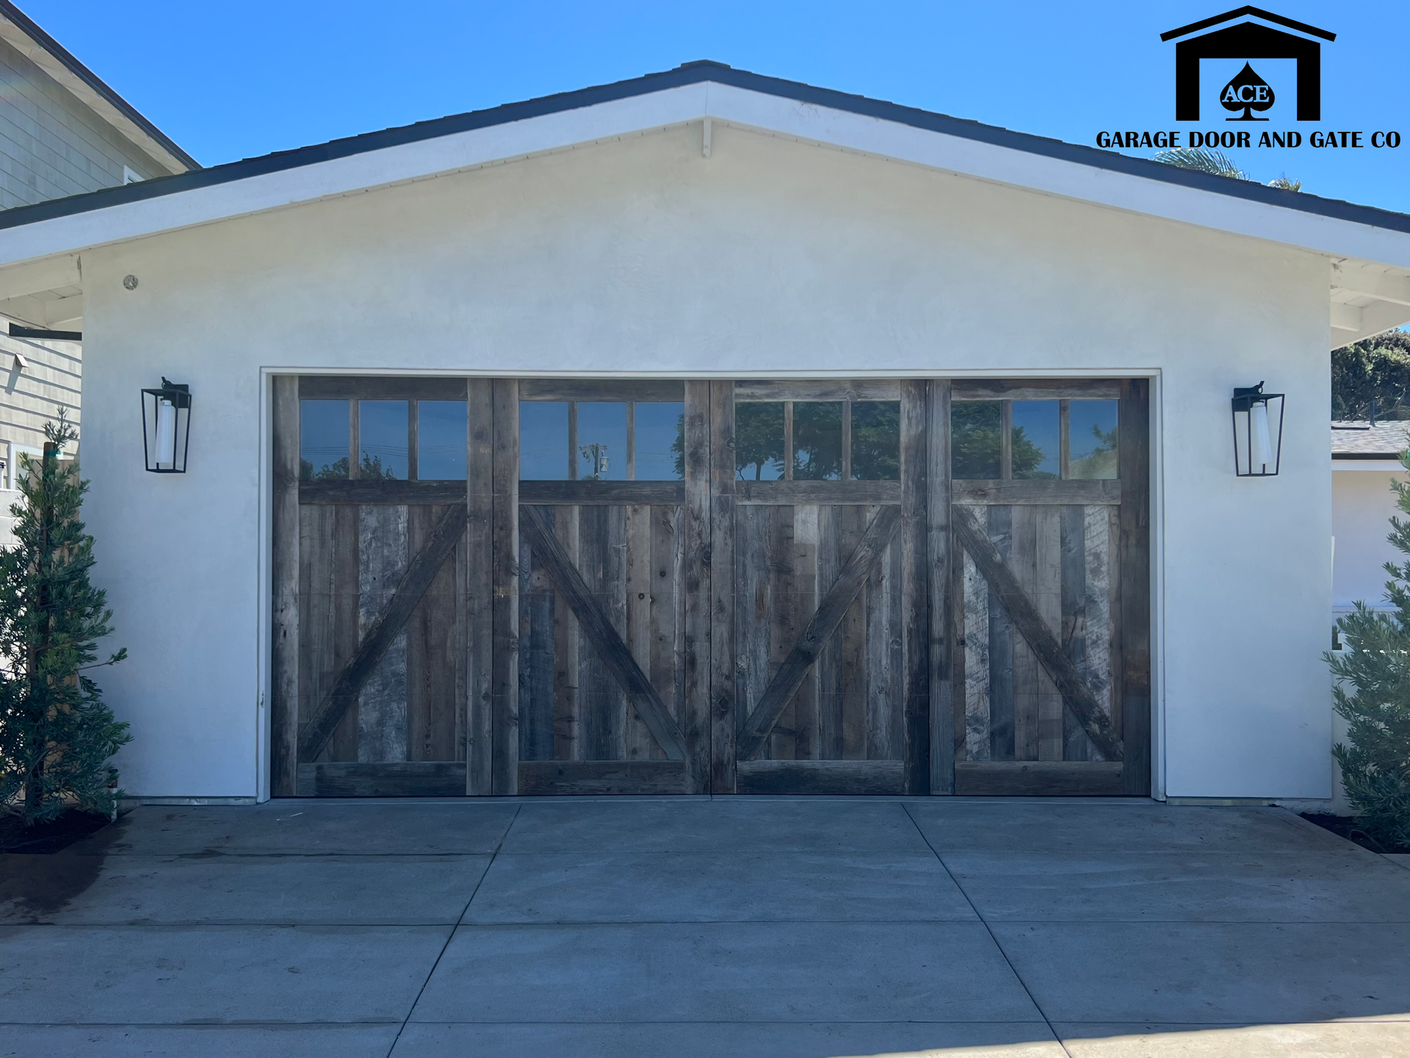 Ace Garage Door and Gate Co custom wood garage doors